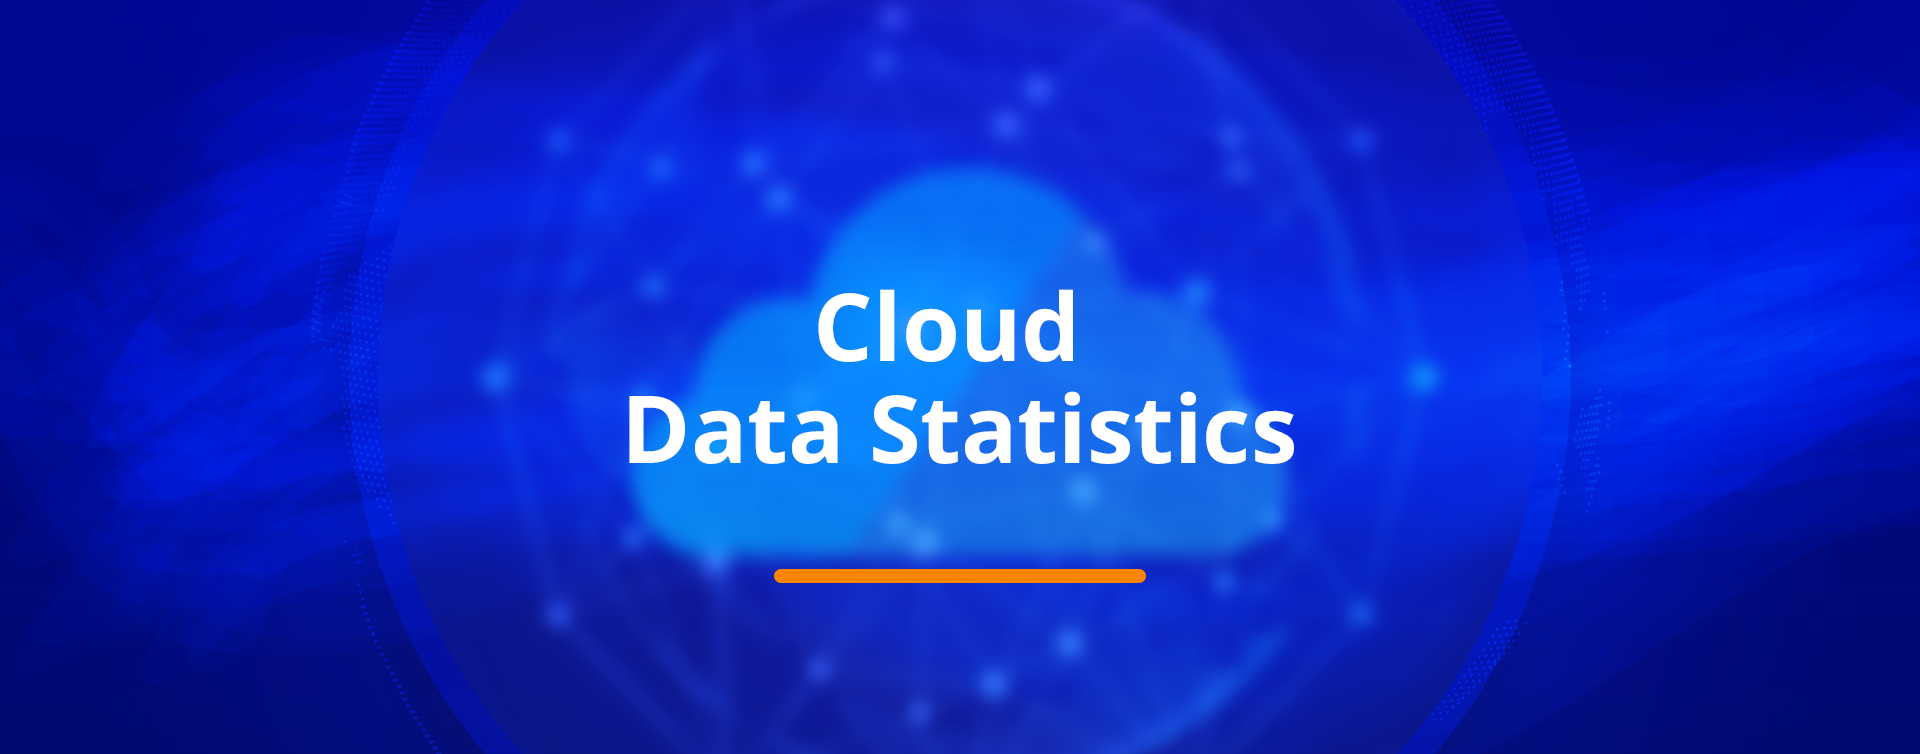 statistiques de données cloud